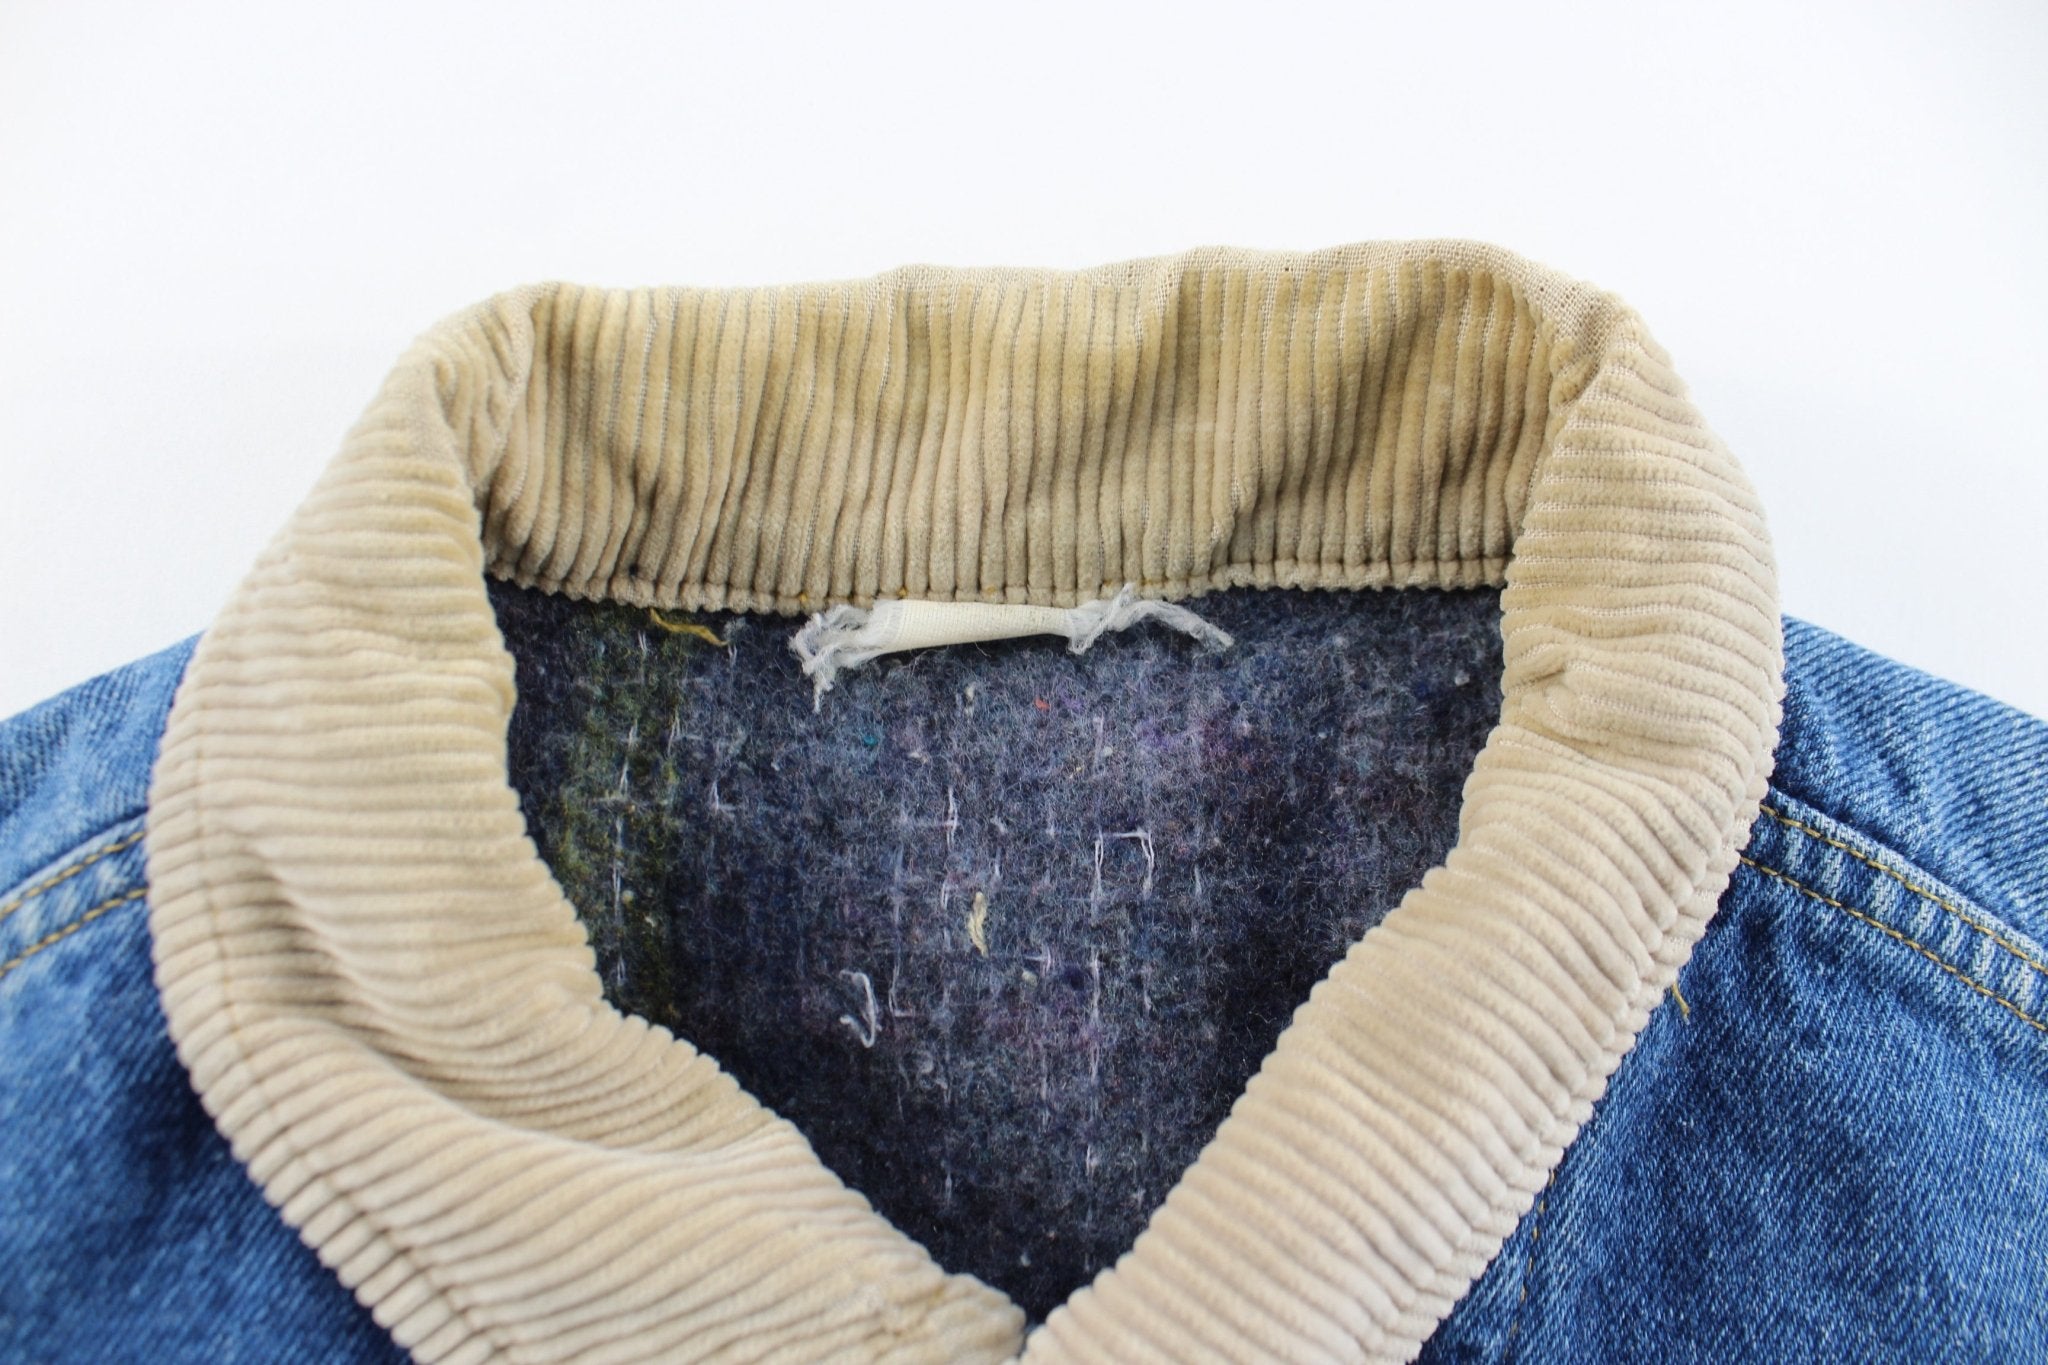 Vintage Lee Blanket Lined Denim Jacket - ThriftedThreads.com